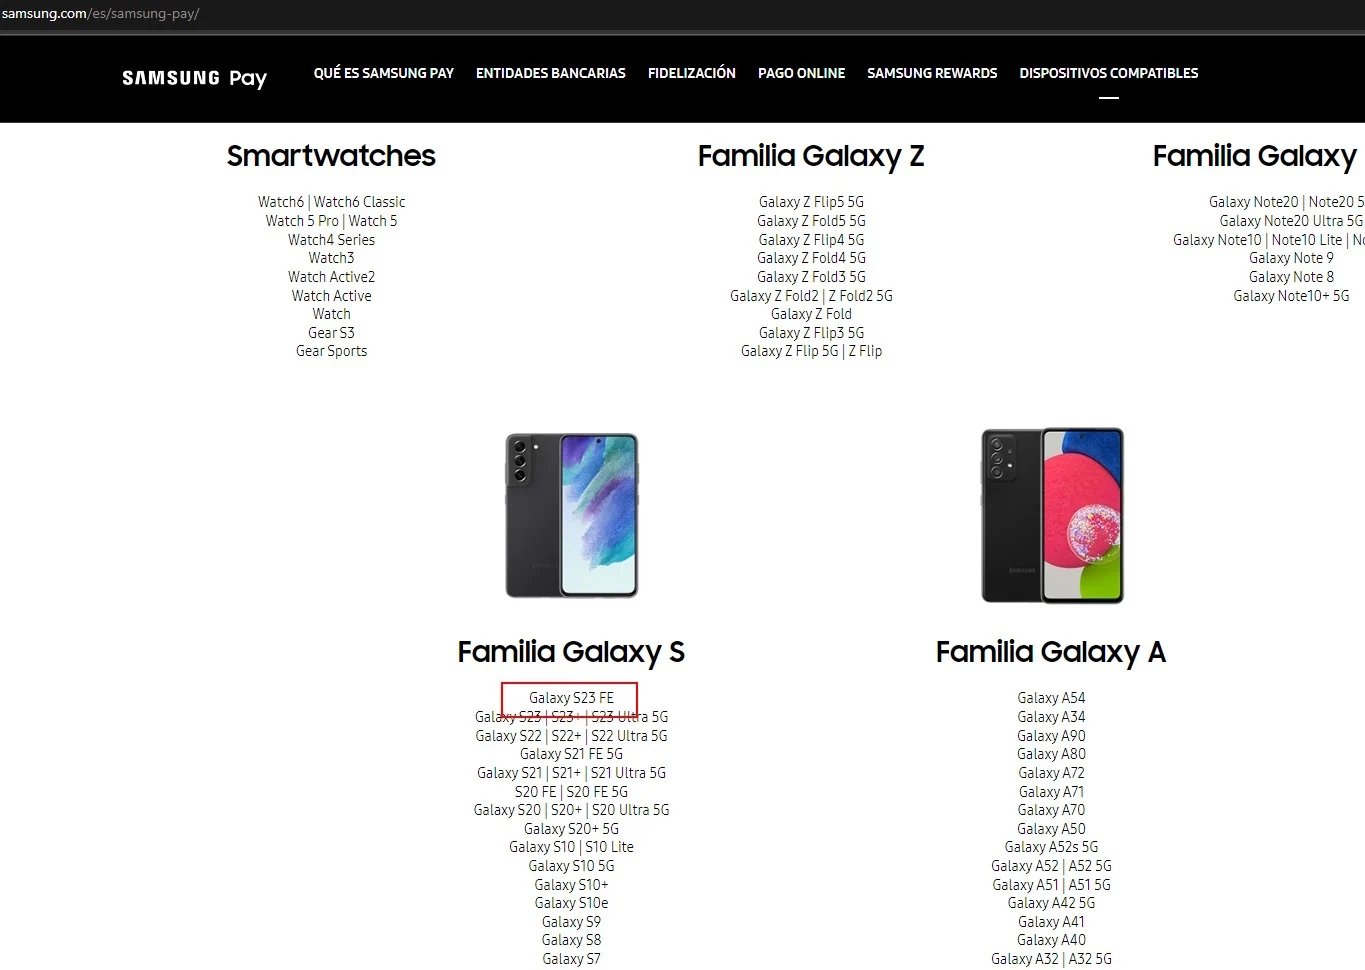 O Galaxy S23 FE foi listado entre os dispositivos compatíveis com o Samsung Pay.